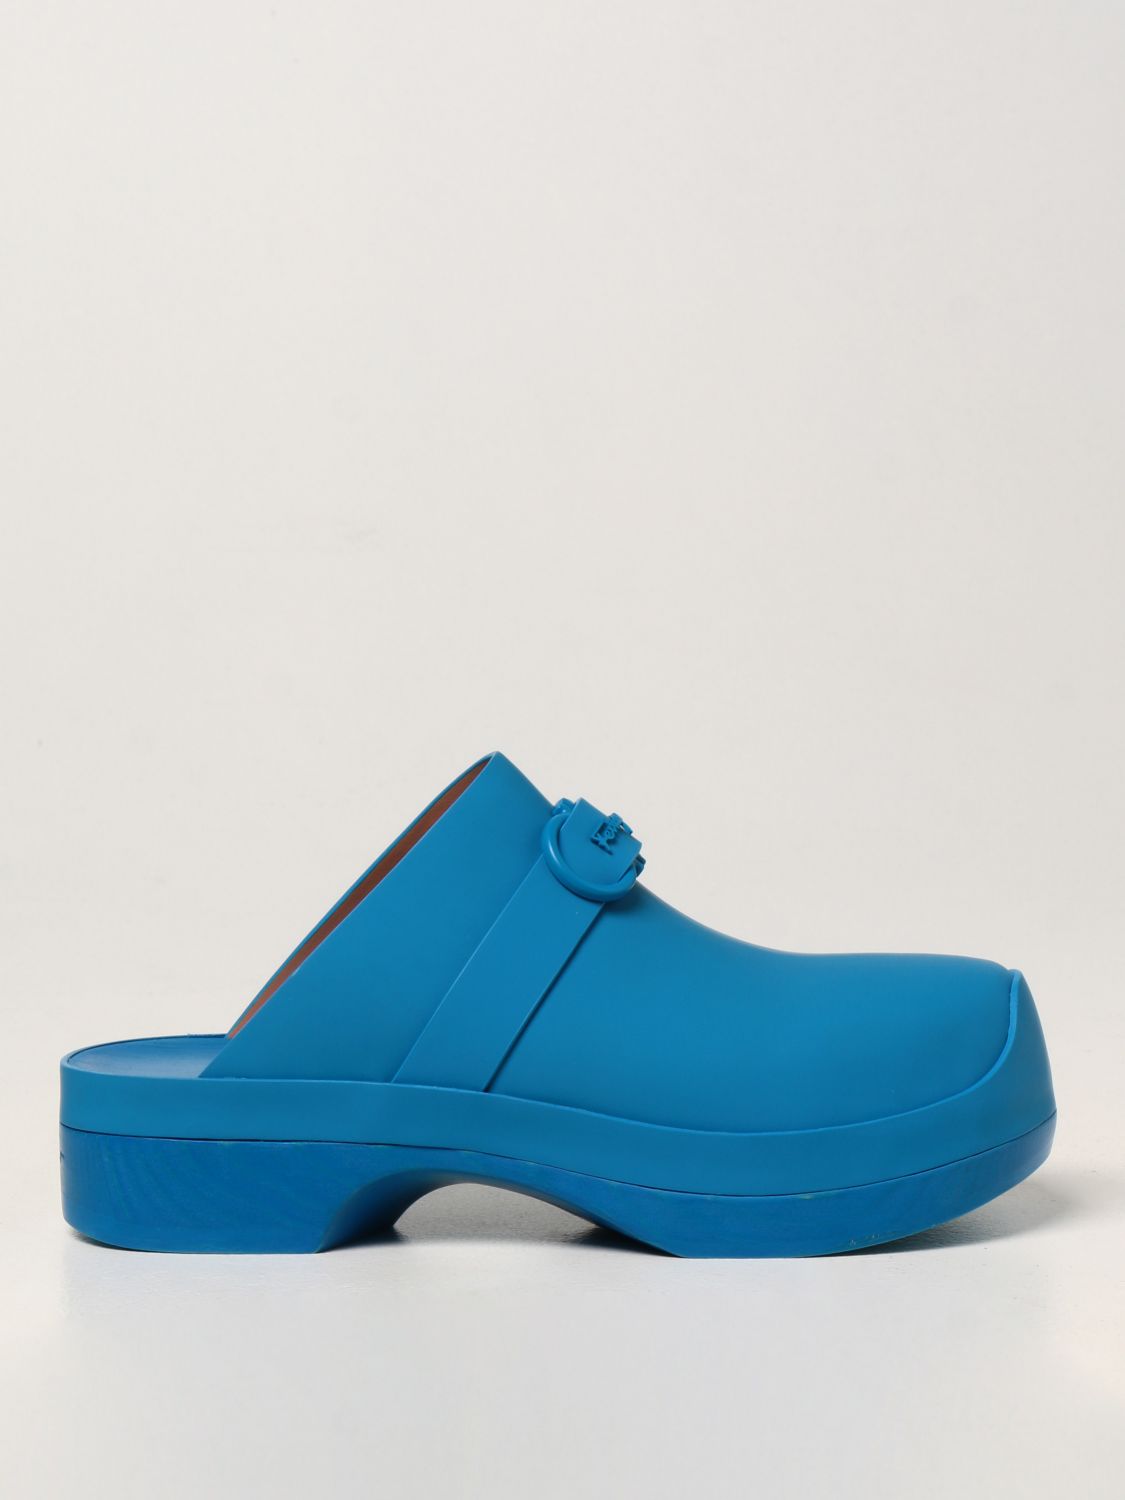 Flache Schuhe Salvatore Ferragamo: Schuhe damen Salvatore Ferragamo royal blue 1